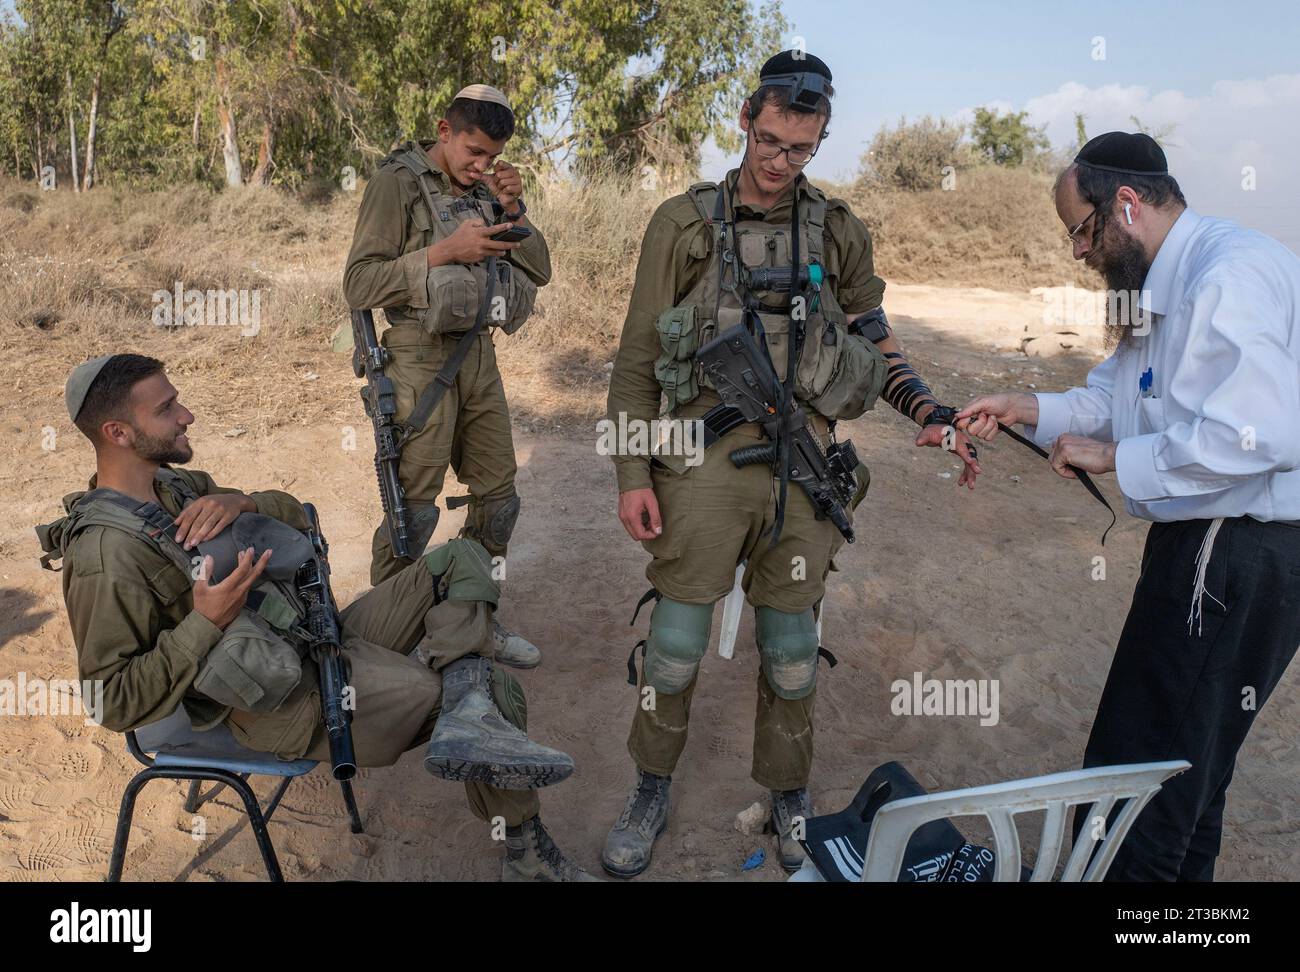 Israele meridionale, Israele. 24 ottobre 2028. I soldati israeliani si rilassano come se fossero stati equipaggiati da un rabbino per pregare in un'area di sosta nel sud di Israele vicino al confine con la Striscia di Gaza martedì 24 ottobre 2023. Israele si sta preparando ad entrare nella Striscia di Gaza dopo le infiltrazioni e gli attacchi che hanno massacrato circa 1,4000 israeliani. Più di 200 sono stati presi in ostaggio nella Striscia di Gaza. Foto di Jim Hollander/UPI Credit: UPI/Alamy Live News Foto Stock